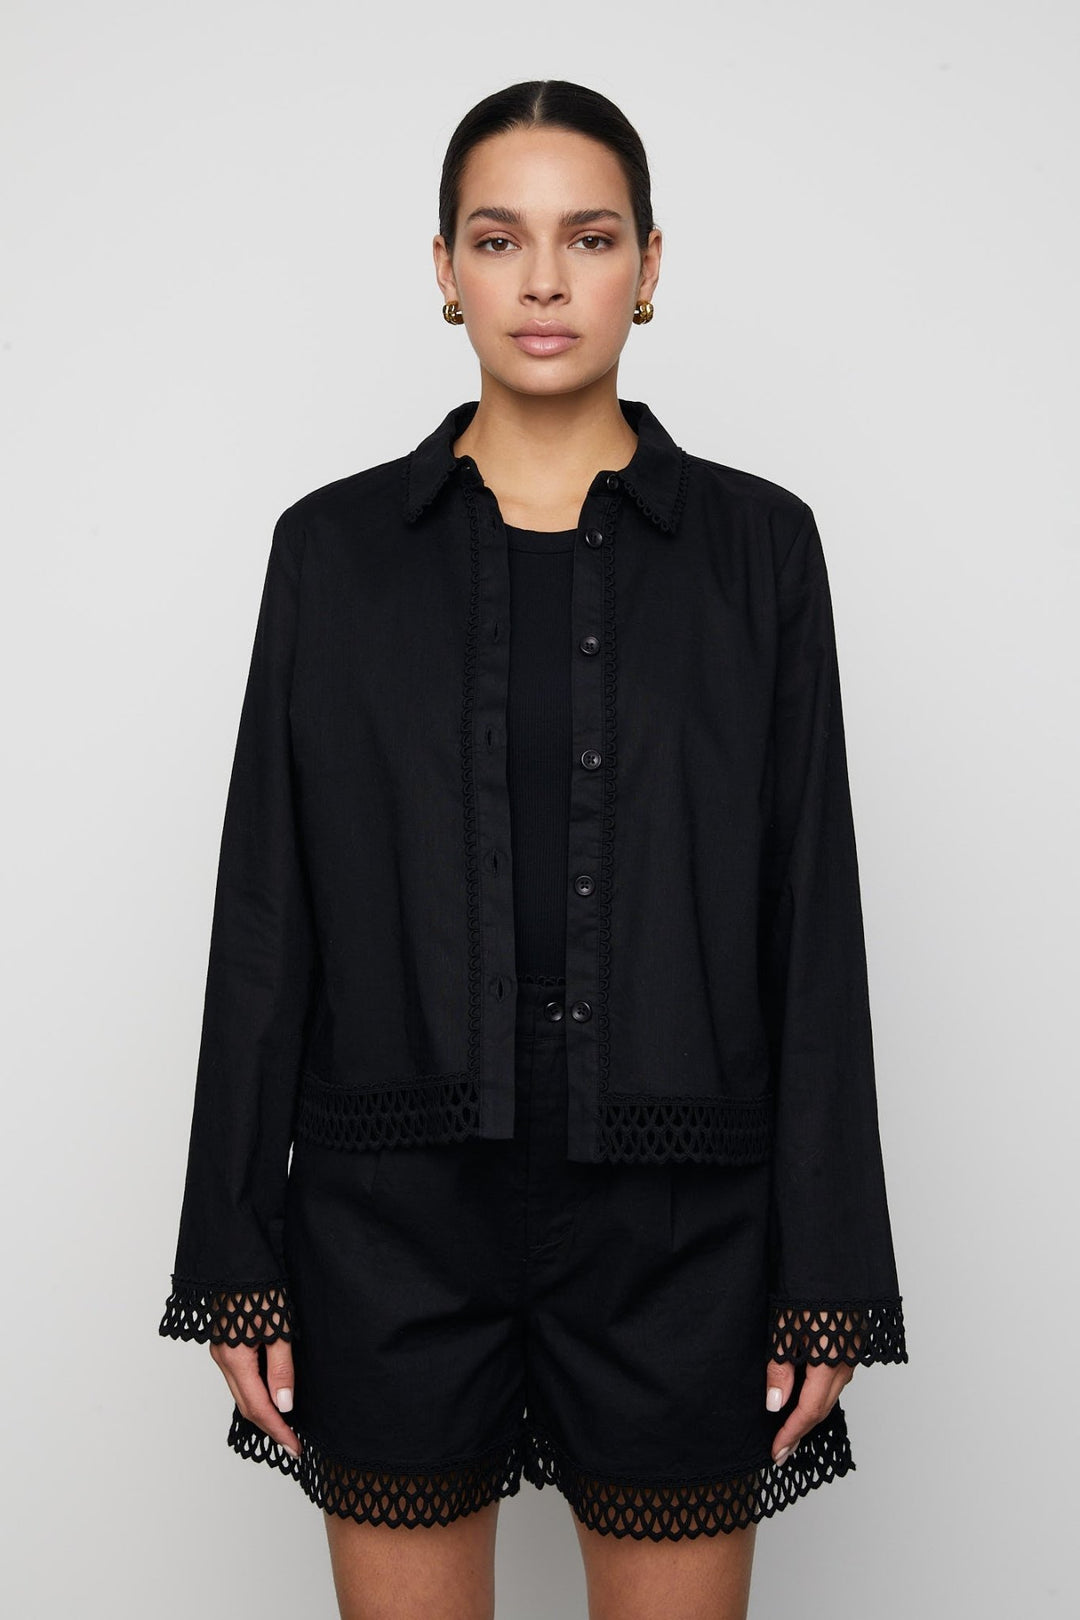 Agathia Shirt Black | Skjorter og bluser | Smuk - Dameklær på nett